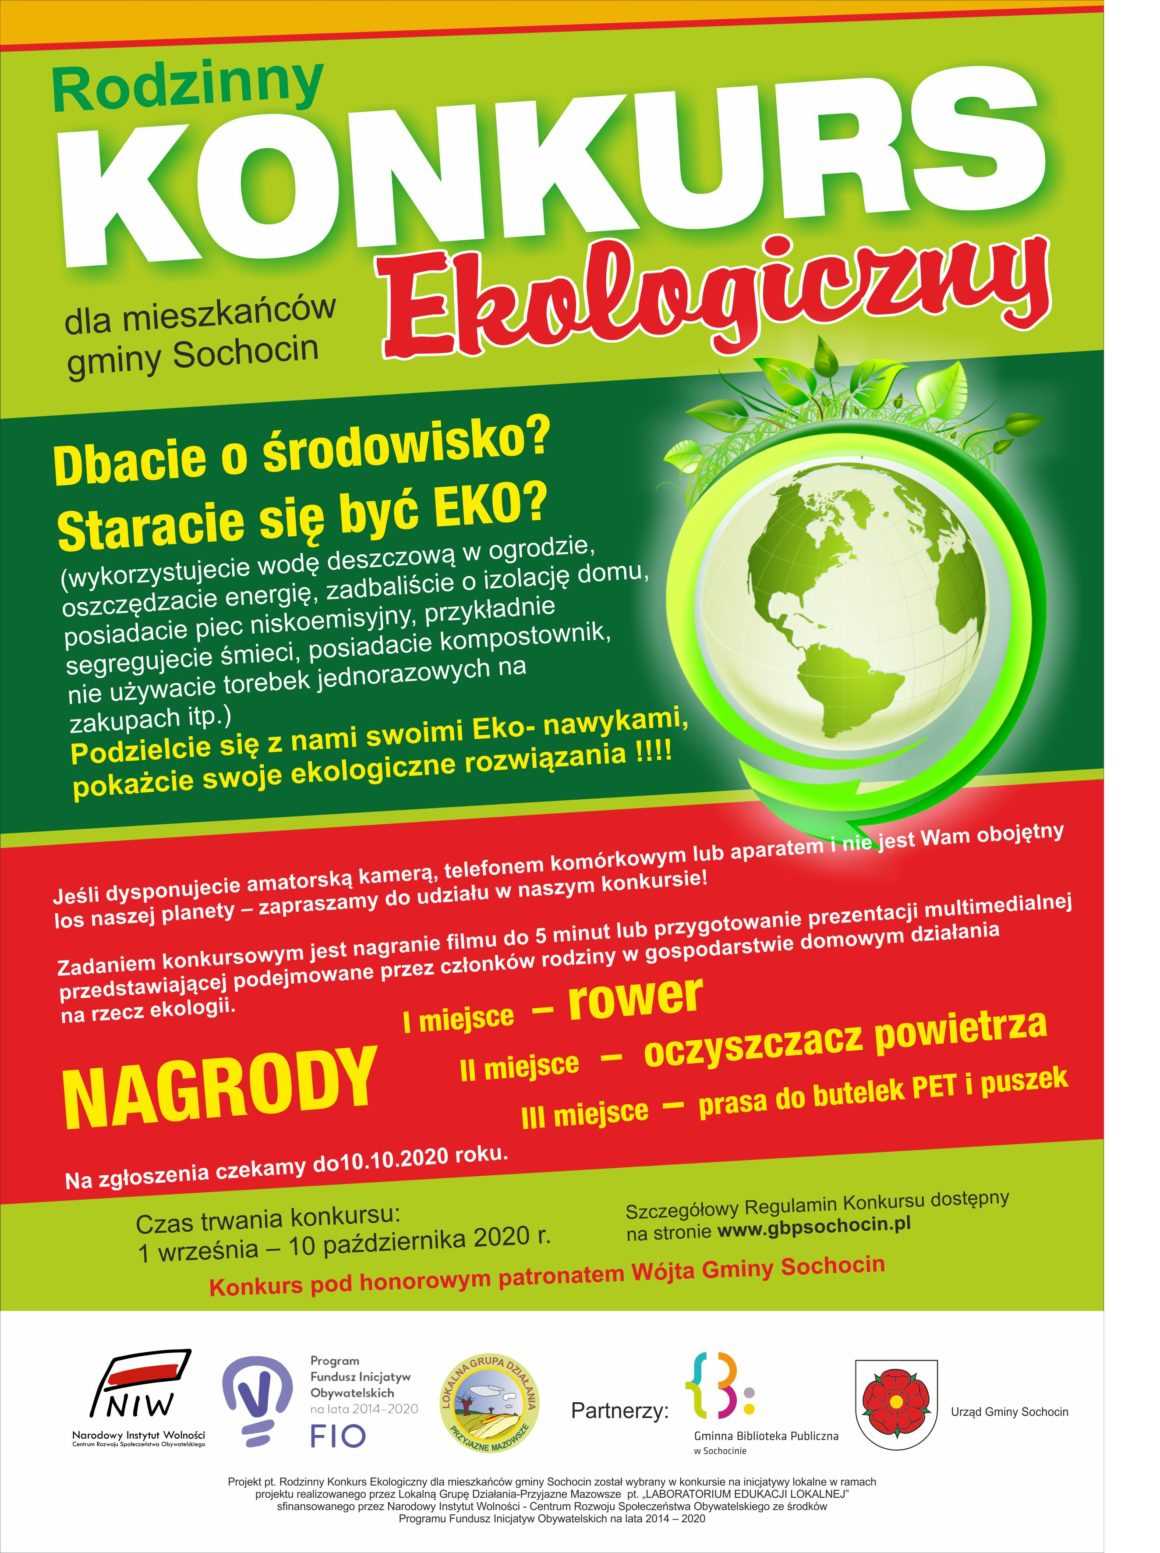 Rodzinny konkurs ekologiczny dla mieszkańców gminy Sochocin